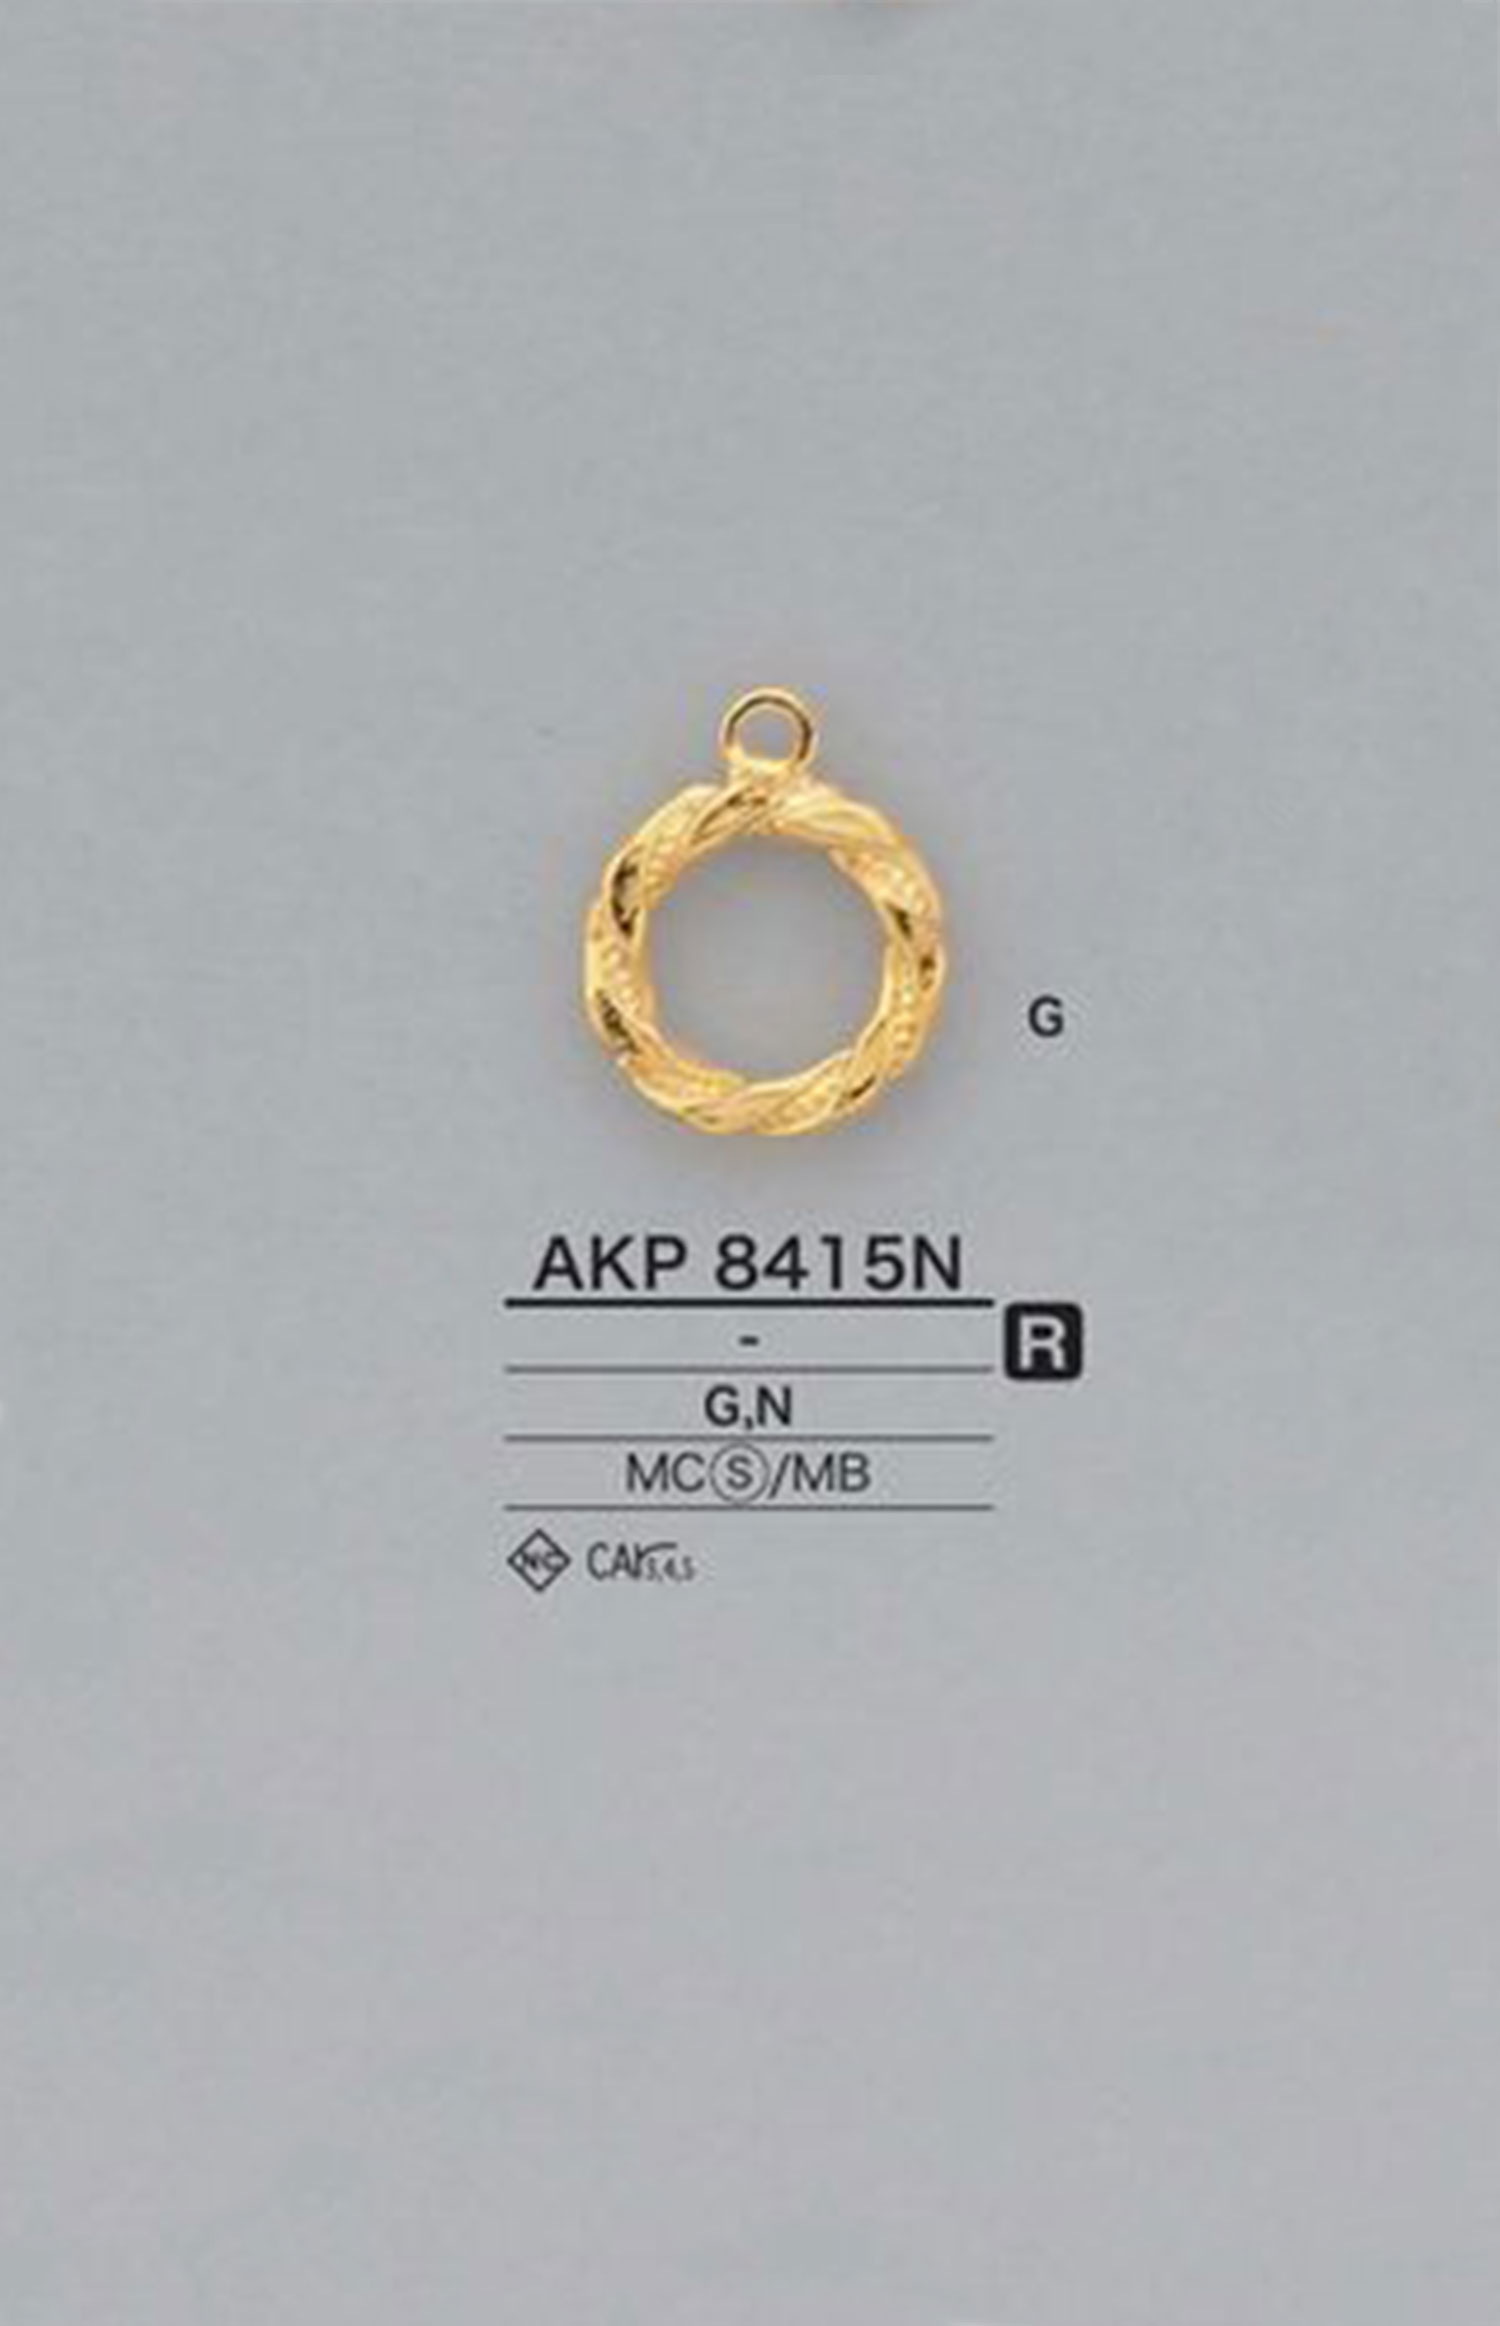 AKP8415N 環點（拉鍊拉頭） 愛麗絲鈕扣